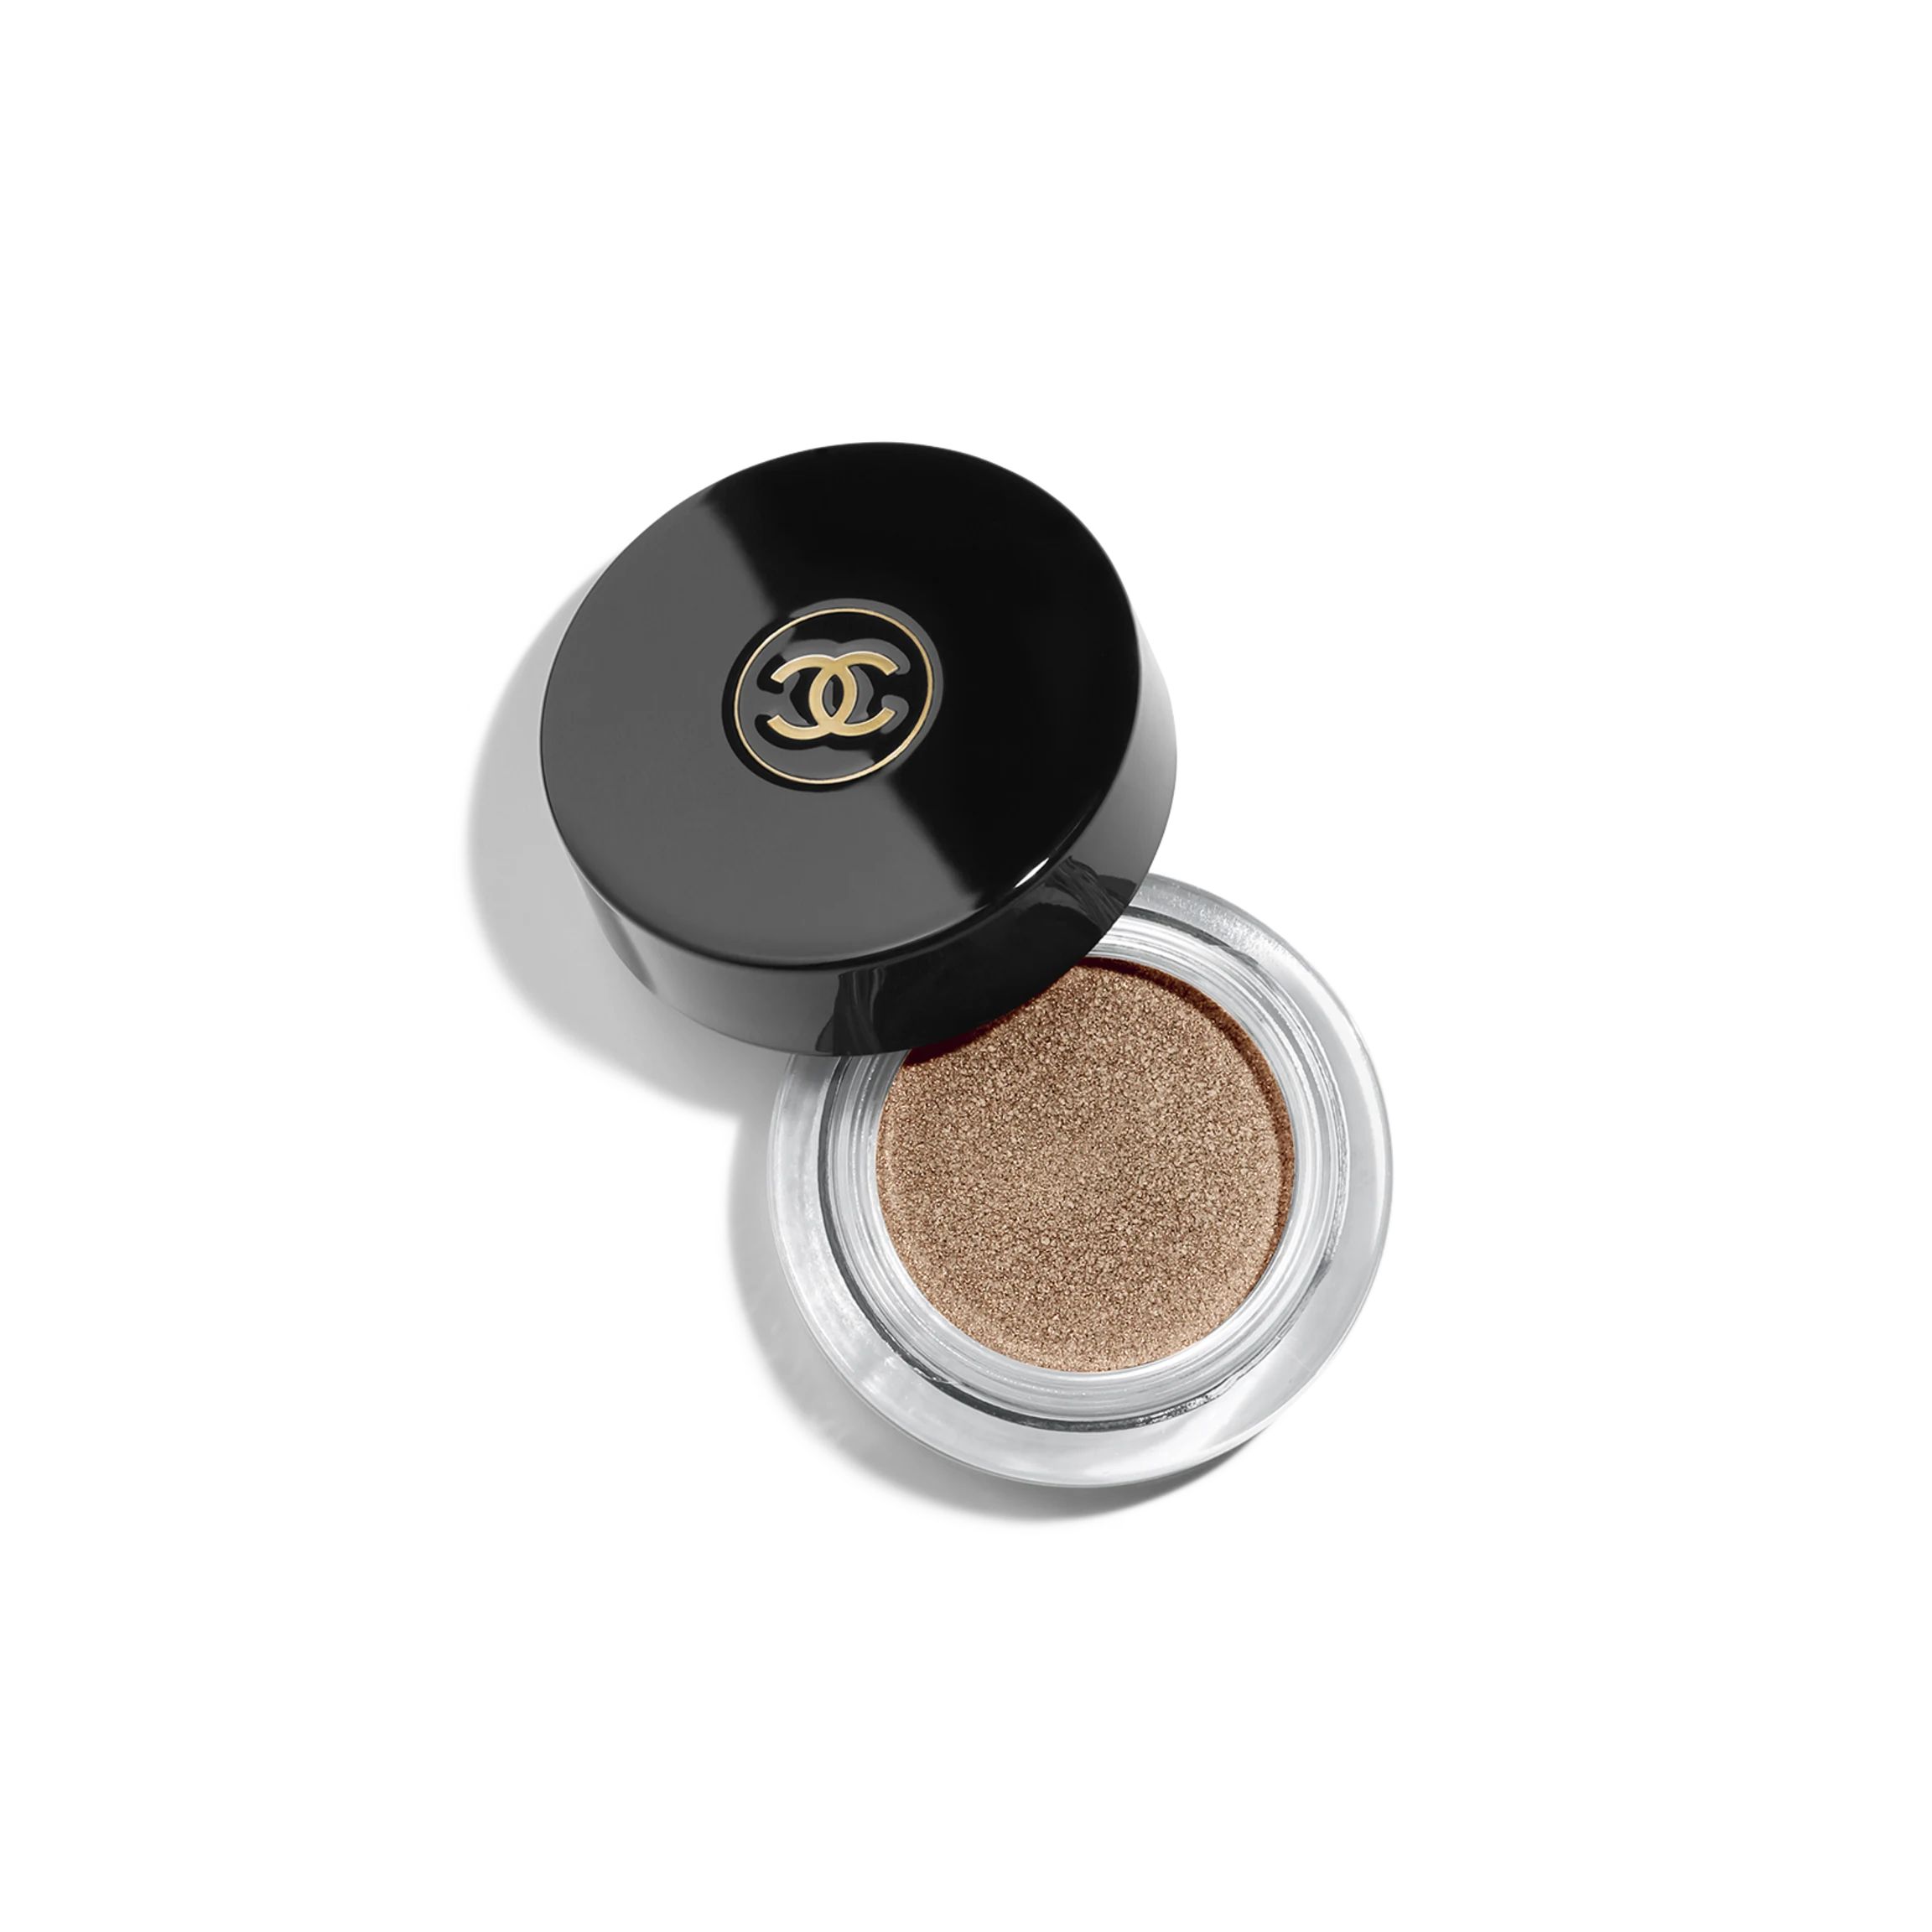 OMBRE PREMIÈRE Longwear cream eyeshadow 802 - Undertone | CHANEL | Chanel, Inc. (US)